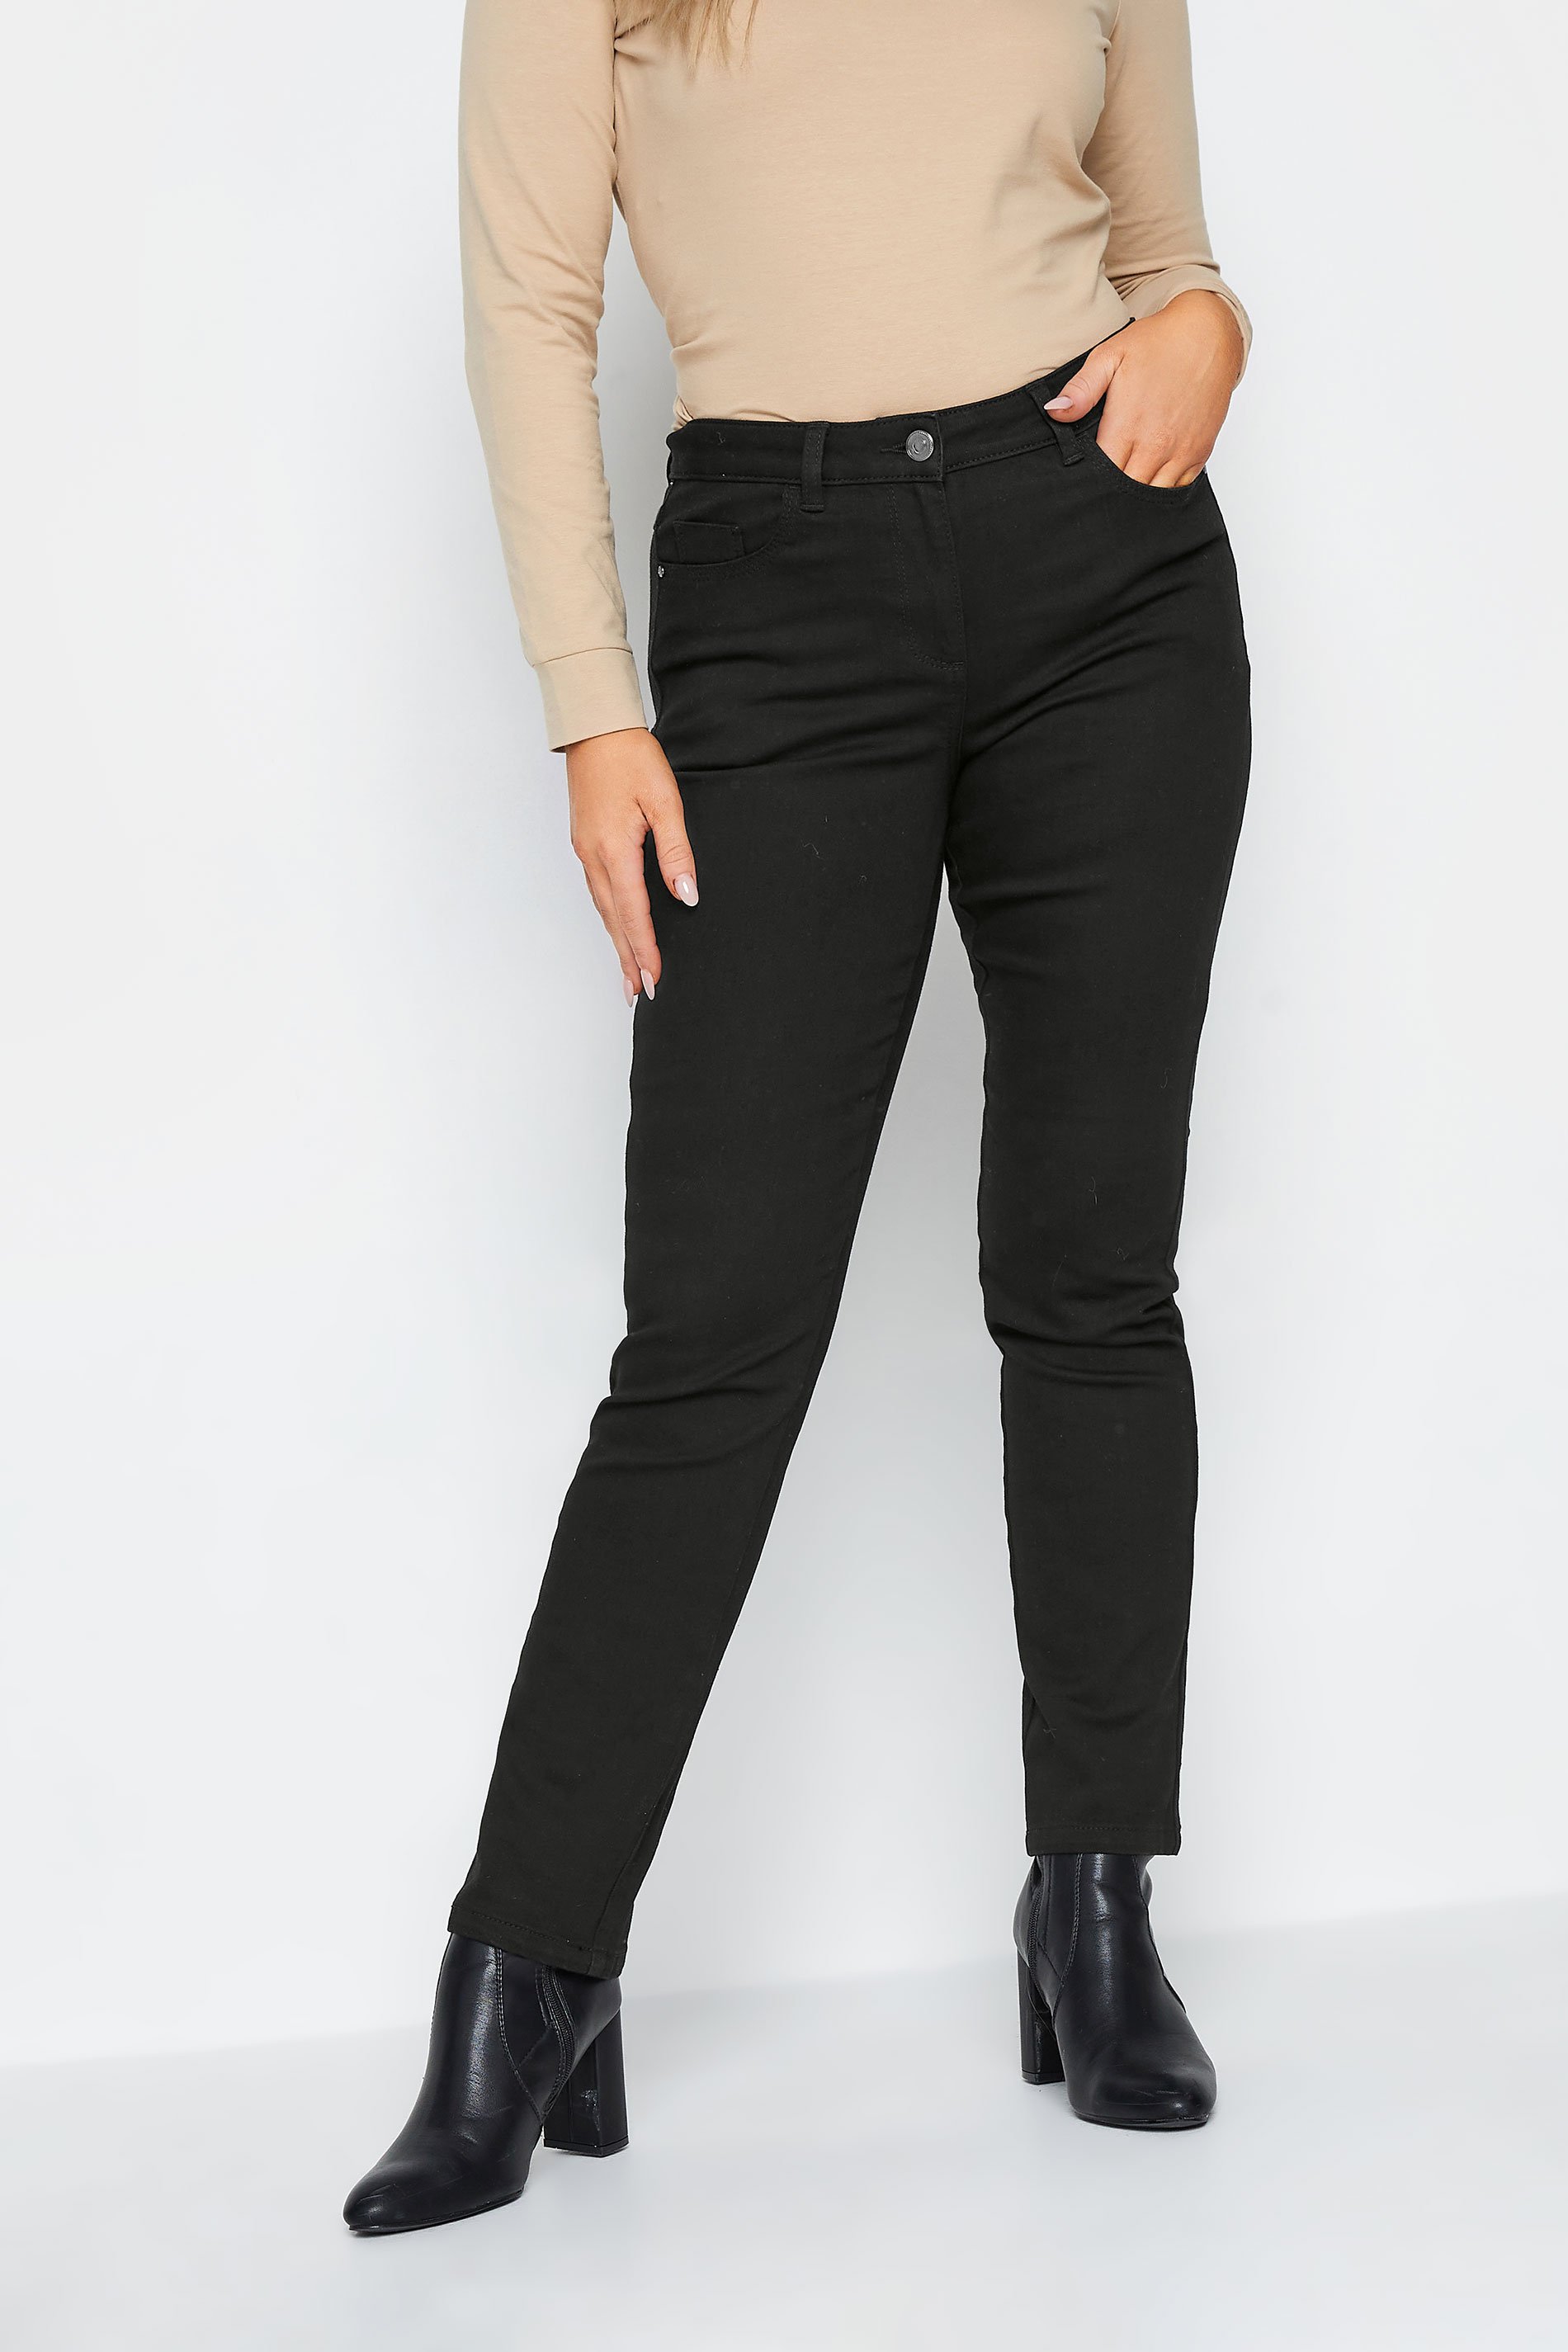 M&Co Black Straight Leg Jeans | M&Co 2